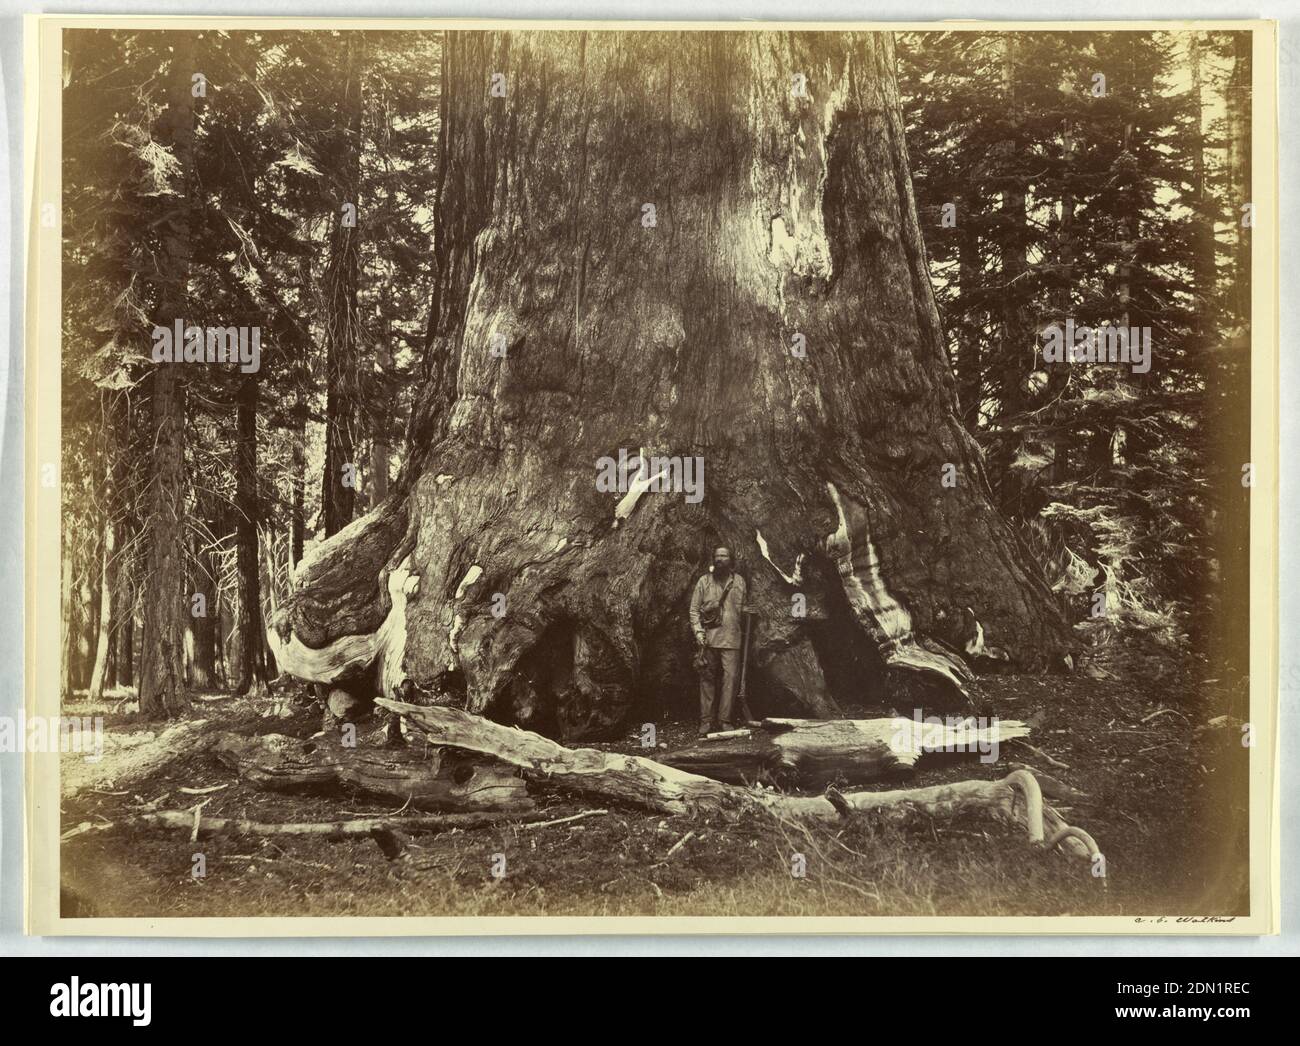 Mariposa Grove, Grizzly Giant, Yosemite, Albumen Silberdruck, Blick auf Wald, Mann mit Gewehr, stehend vor einem riesigen Baumstamm., USA, 1861–66, Landschaften, Fotografie, Fotografie Stockfoto